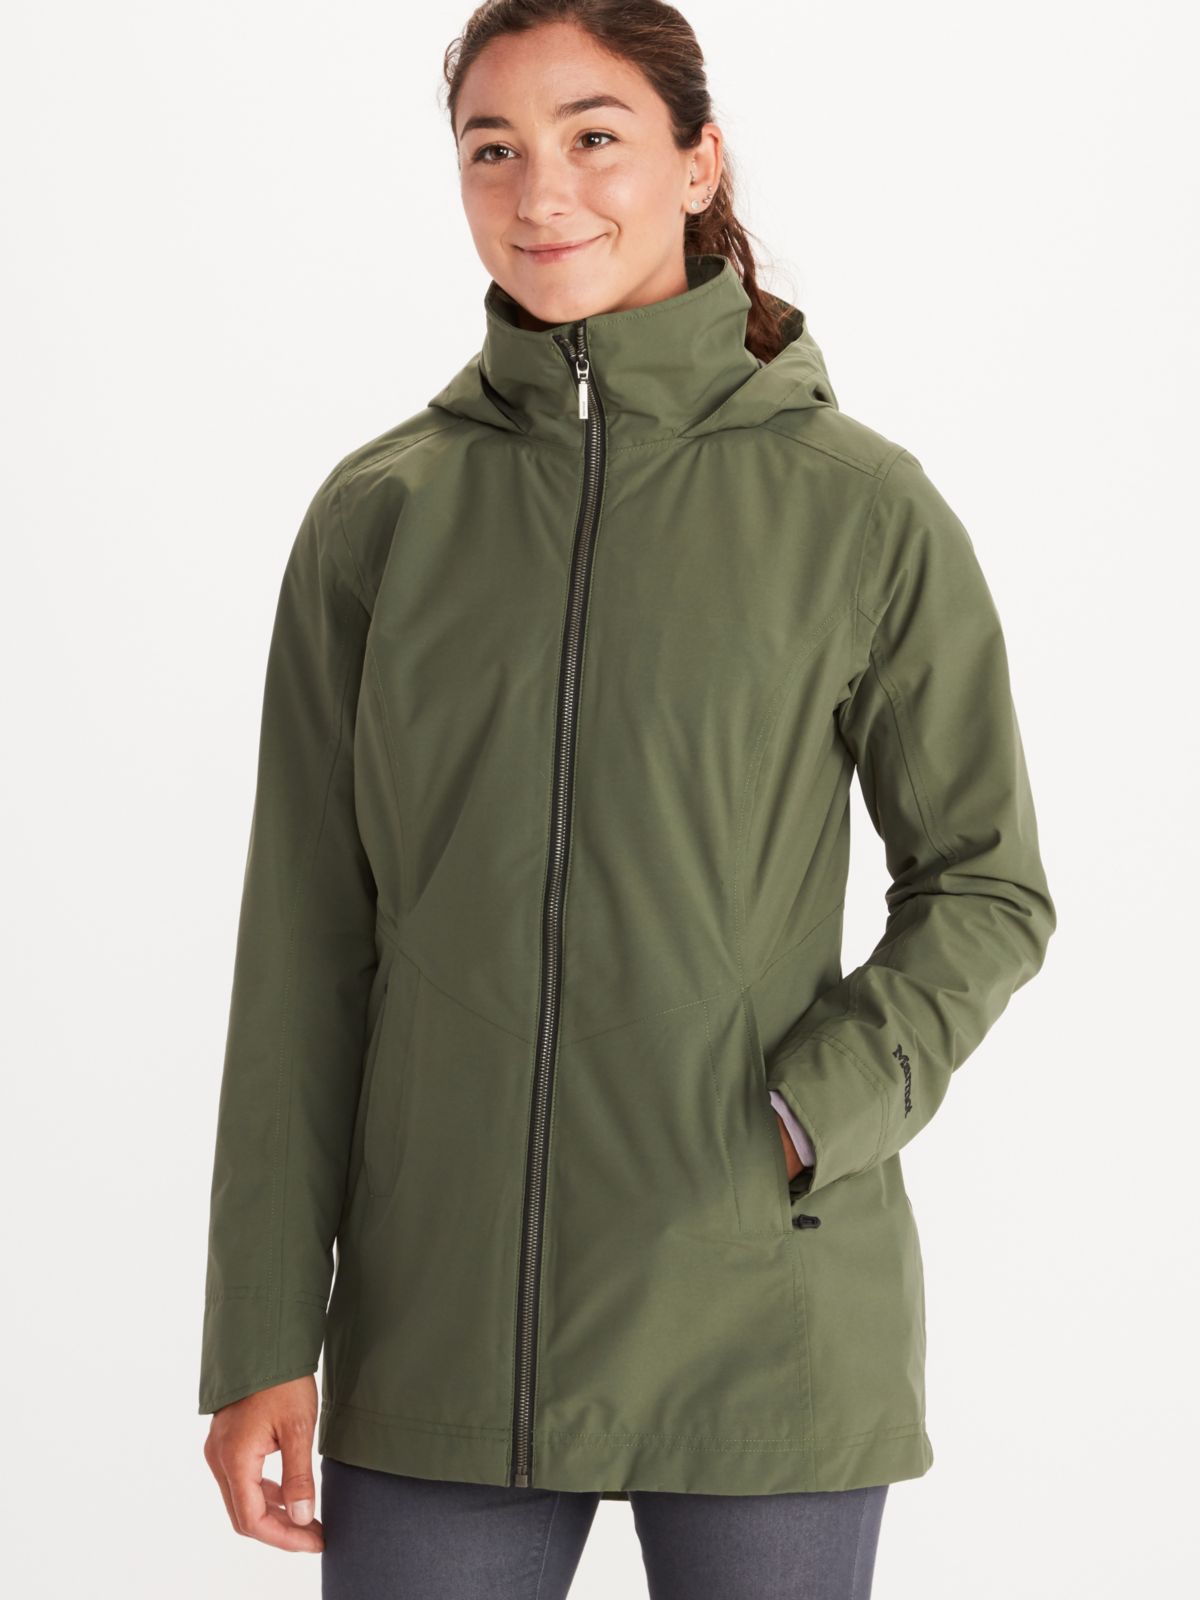 women's waterproof rain jacket